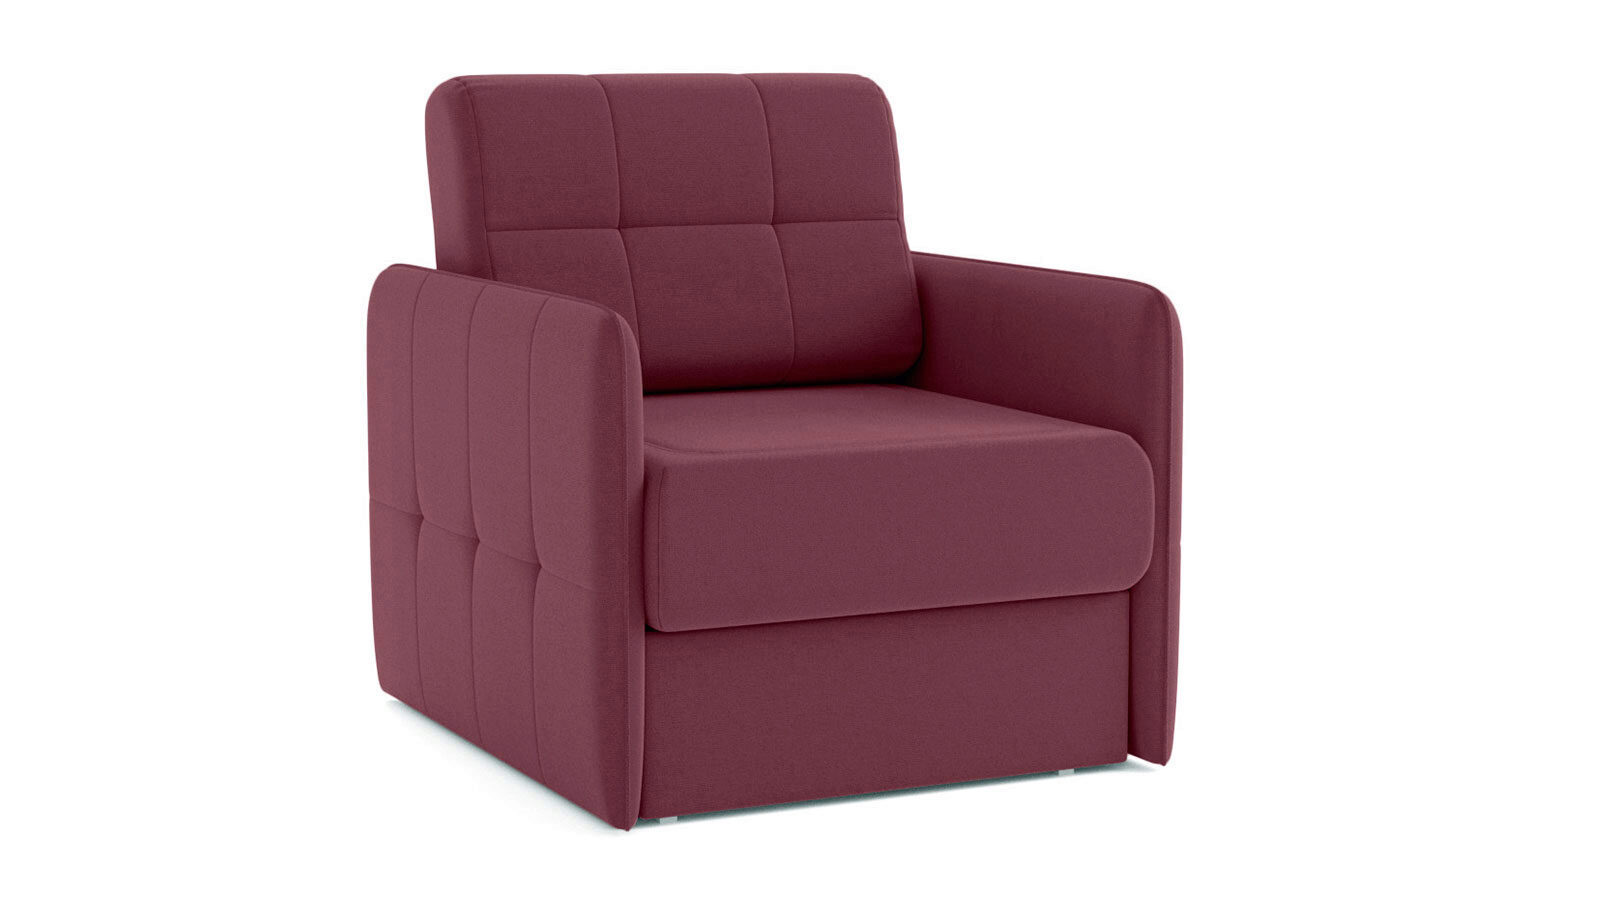 Кресло Loko Royal с узкими подлокотниками память пена сиденье подушка спина облегчение боли ортопедическая подушка офисное кресло coccyx